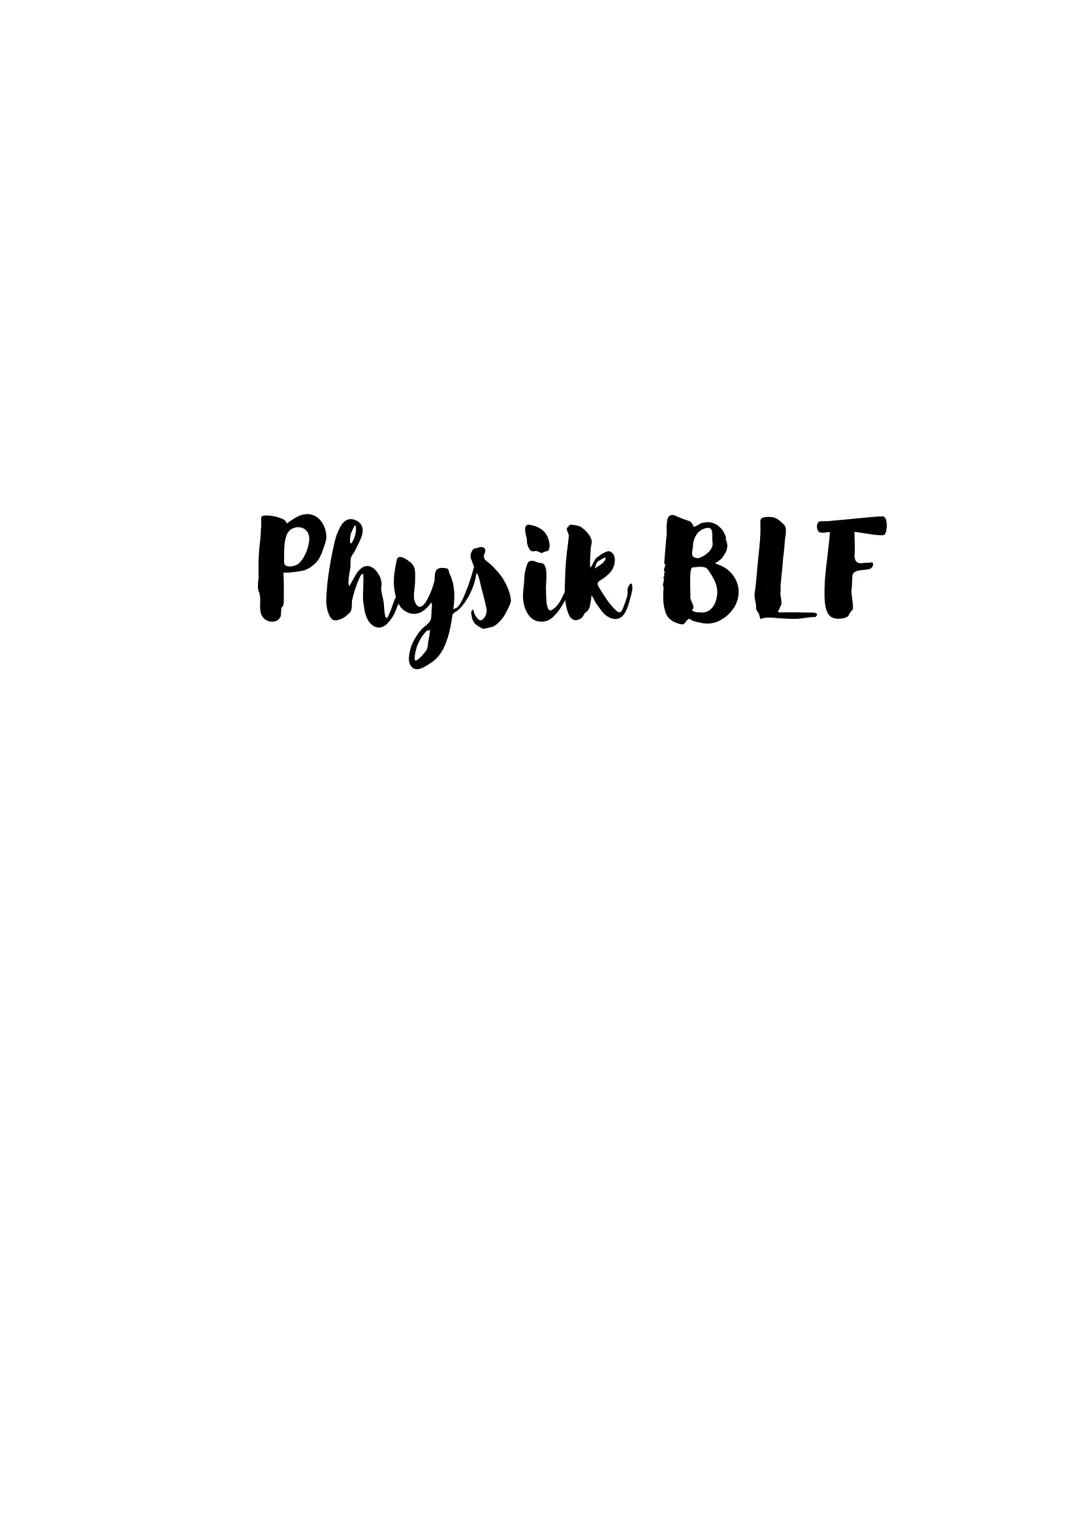 Physik BLF Inhalt
+1 Mechanik.
1.1 Körper und Stoff.
1.1.1 Aufbau der Körper.
1.1.2 Das Teilchenmodell.
1.2 Volumen und Masse von Körpern.
1